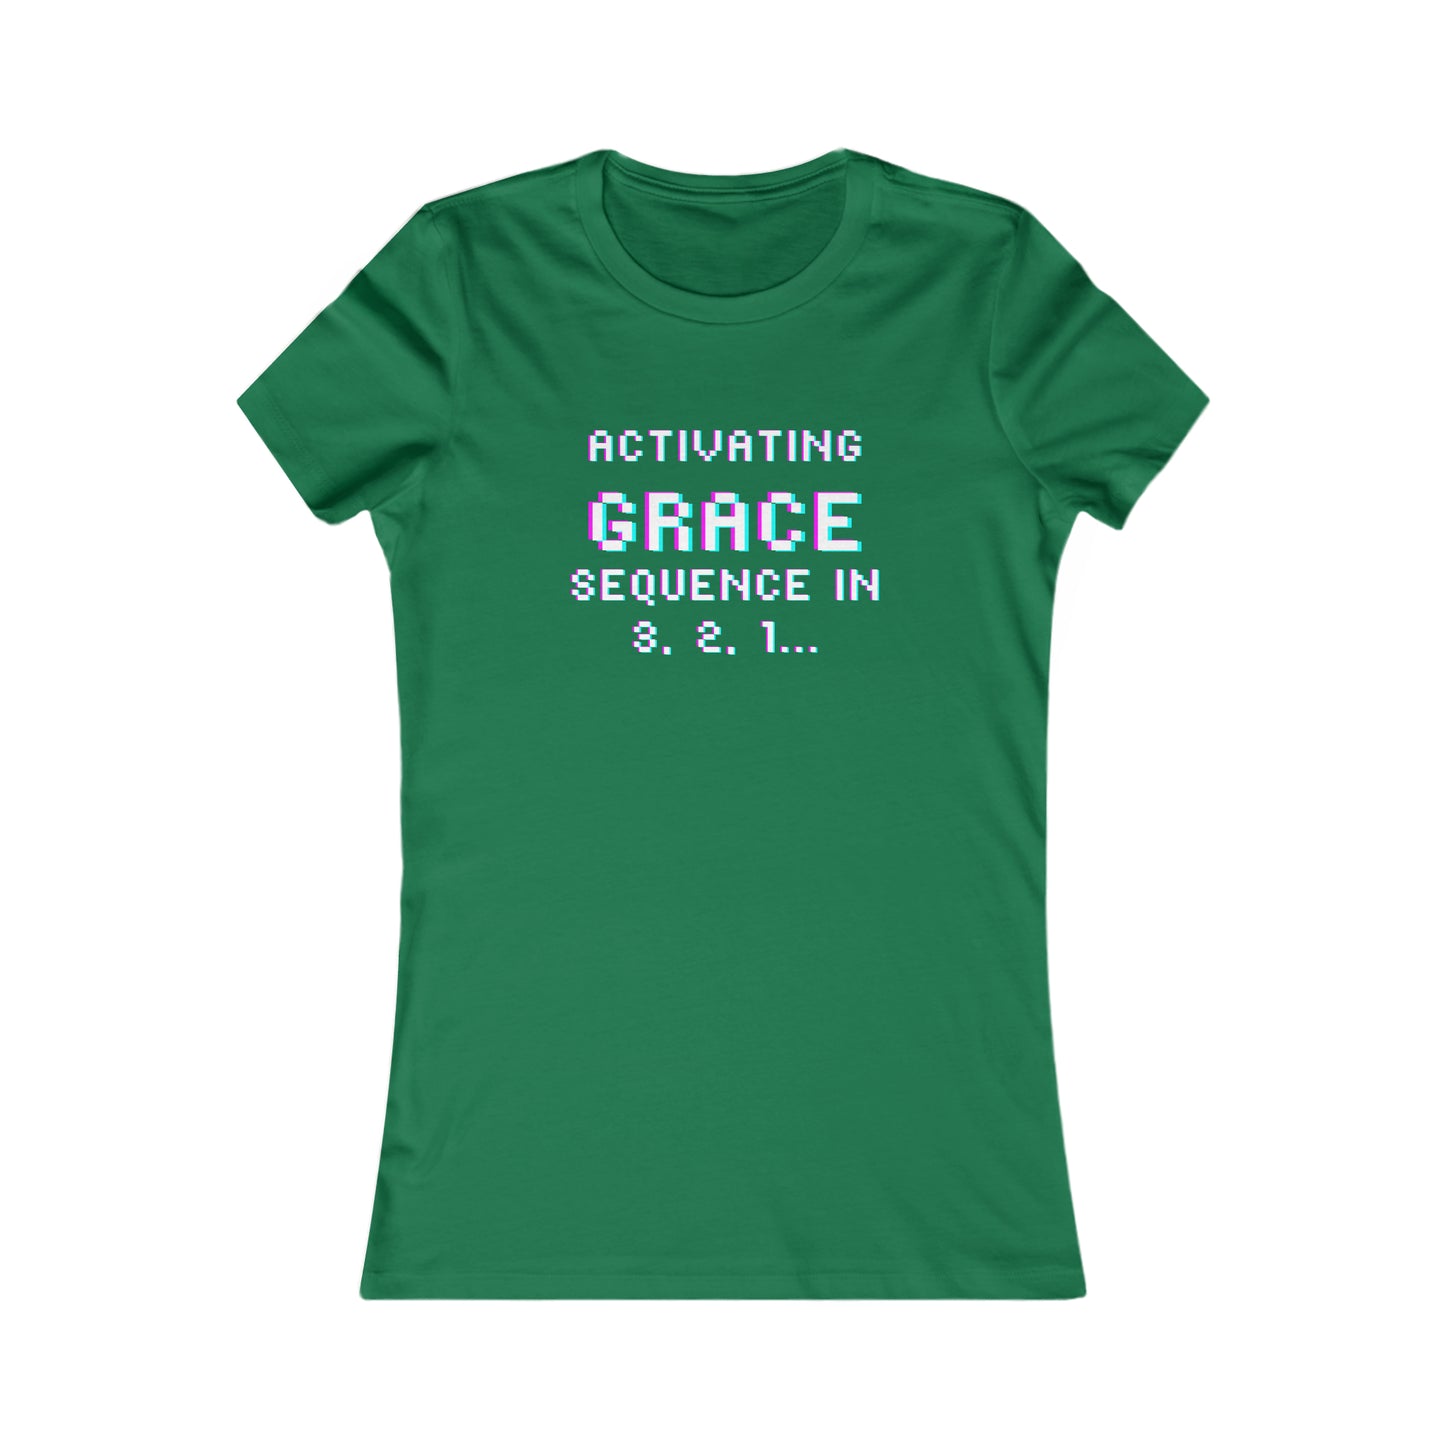 Activate Grace...